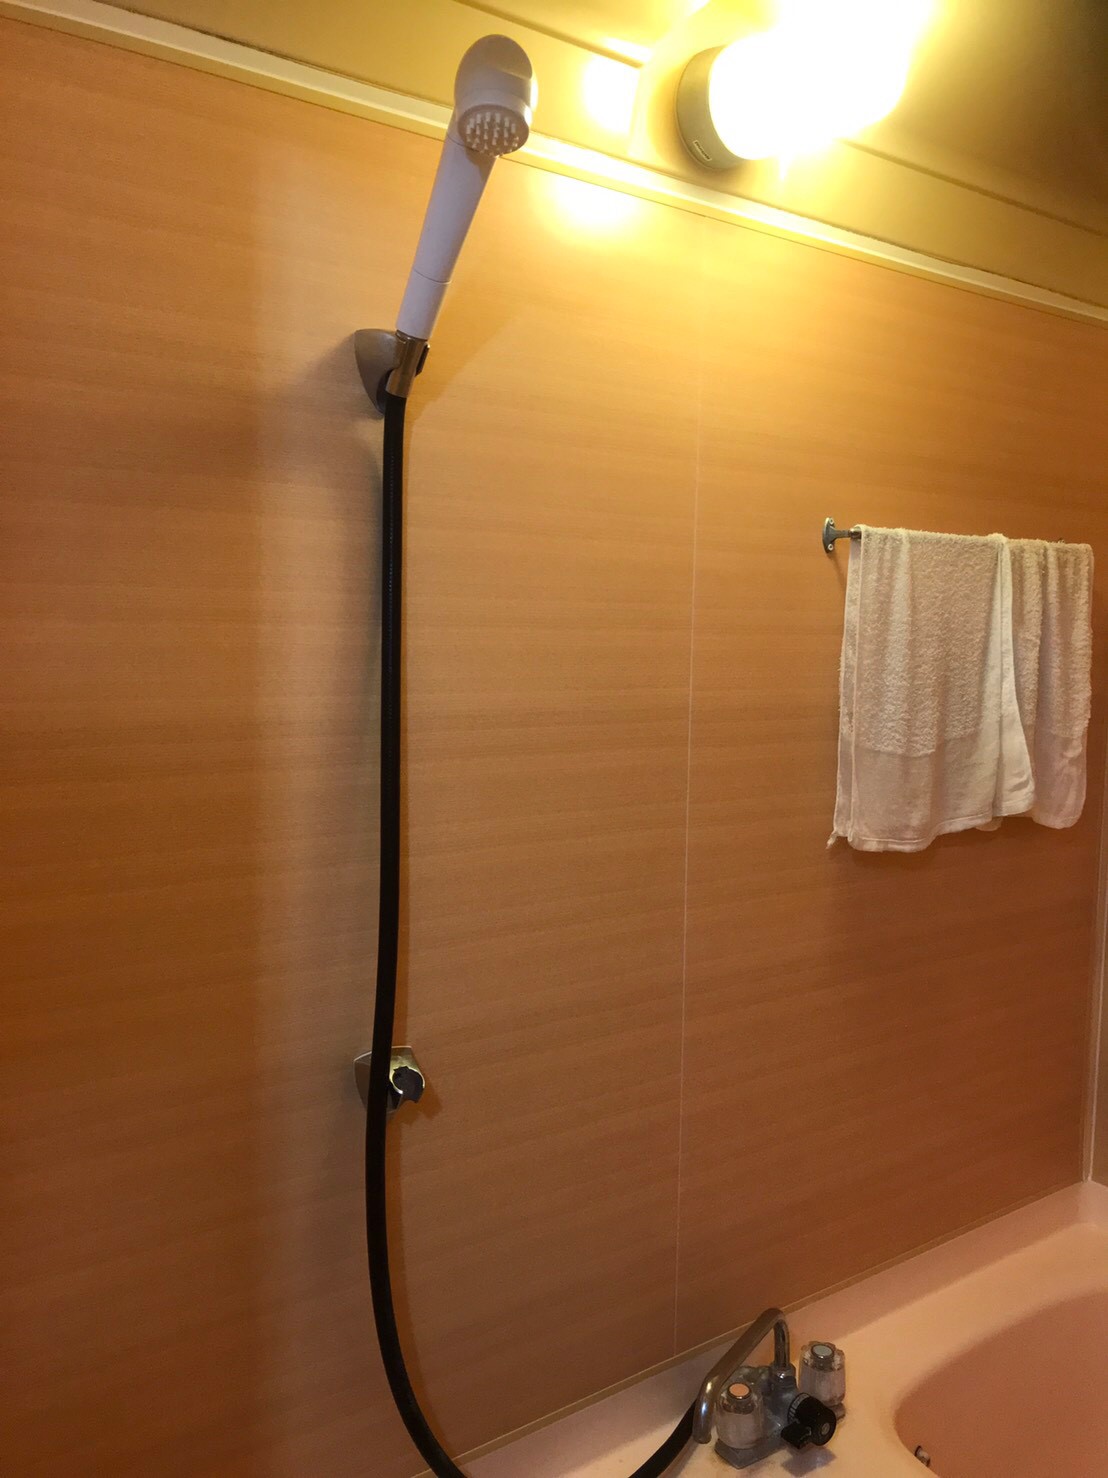 神奈川県横浜市港北区マンション浴室壁リフォーム工事